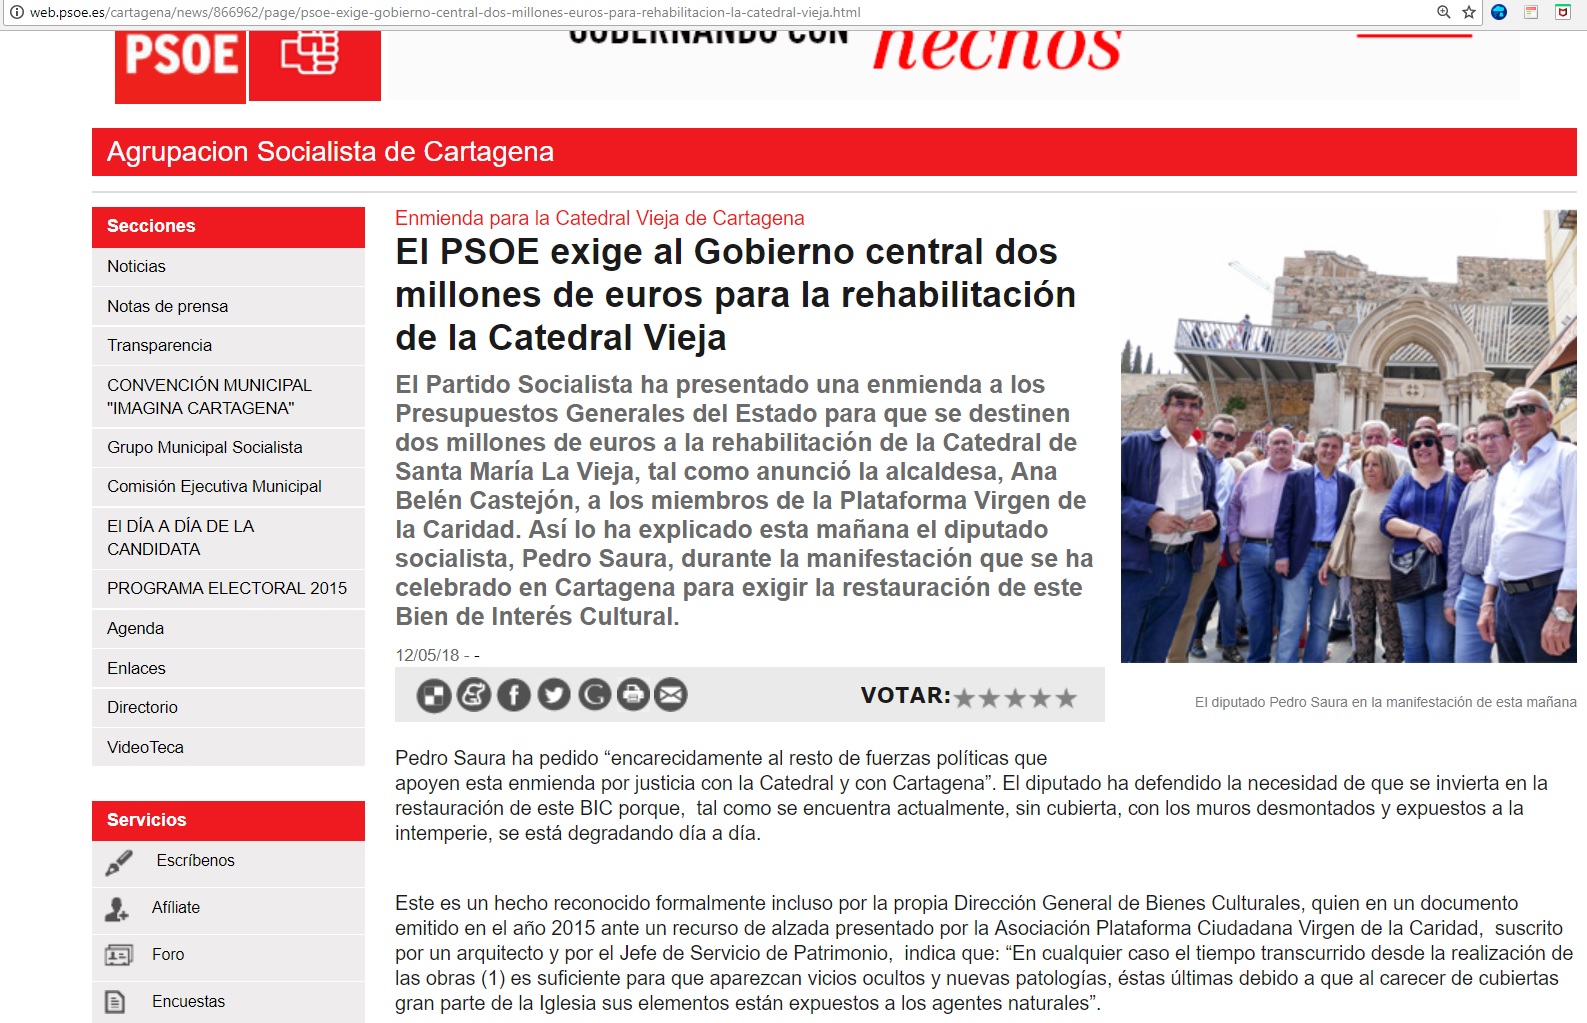 Fuente imagen: Agrupación Socialista Cartagena